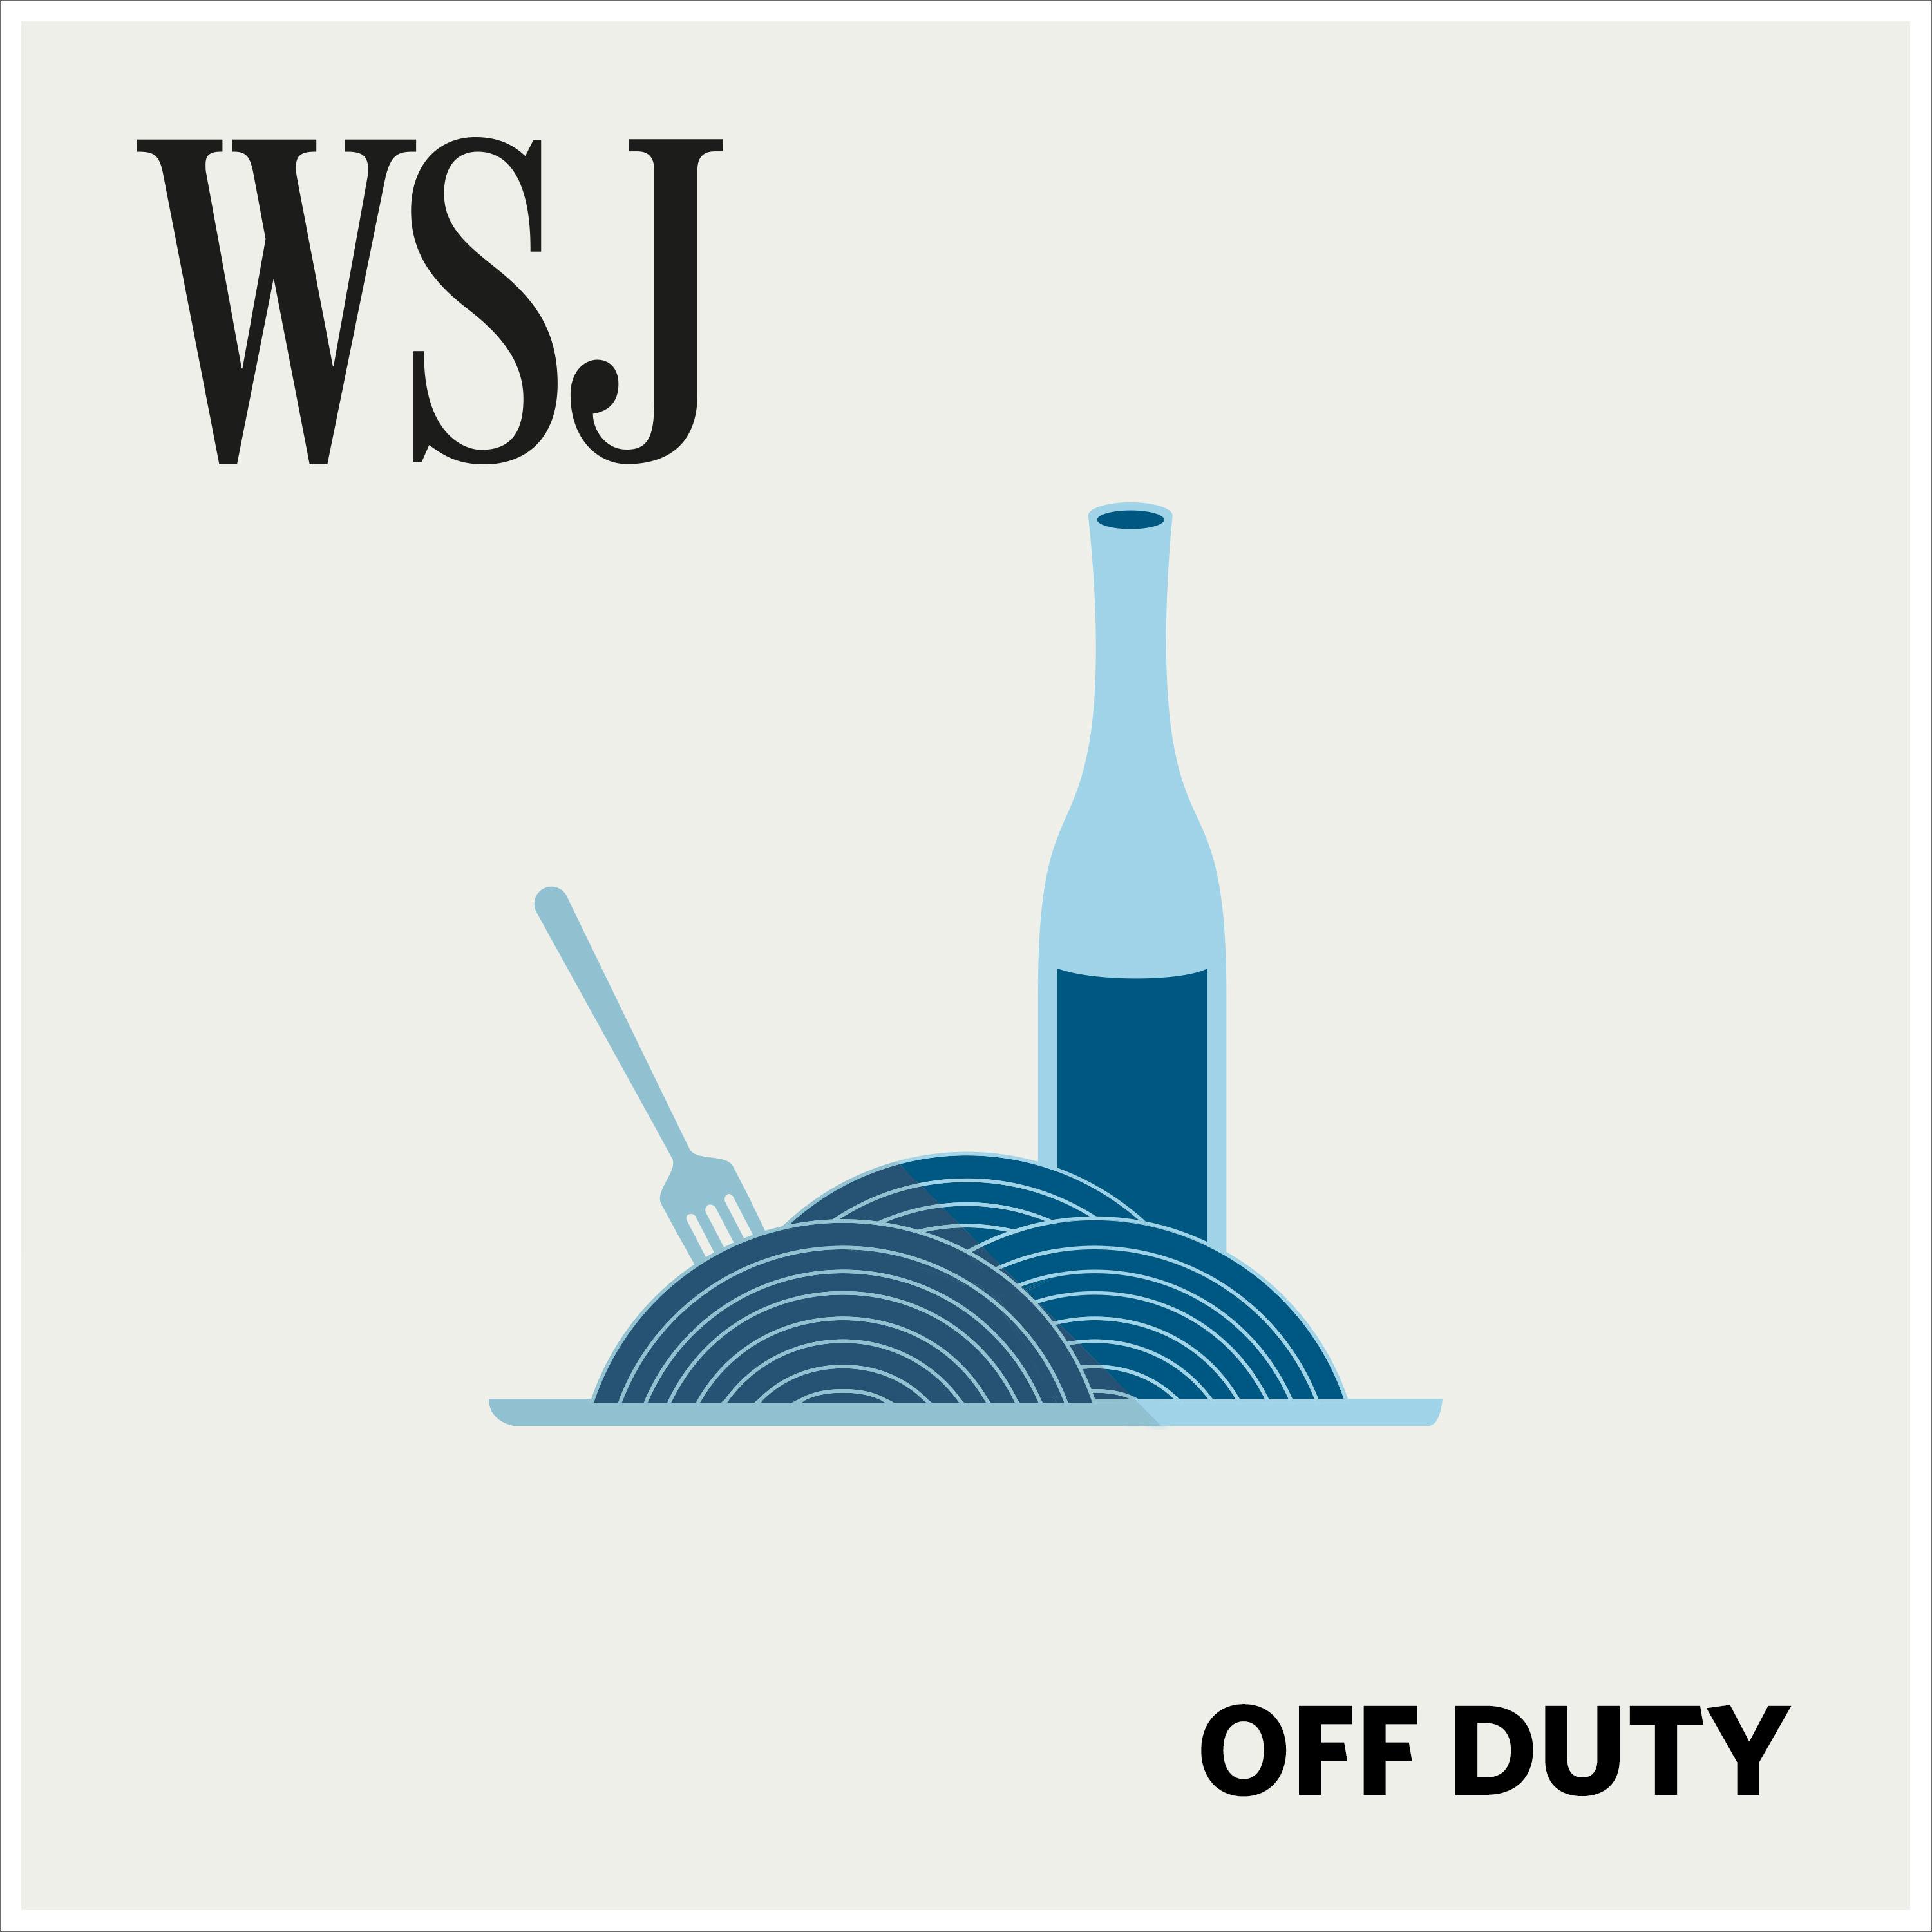 WSJ Off Duty:The Wall Street Journal